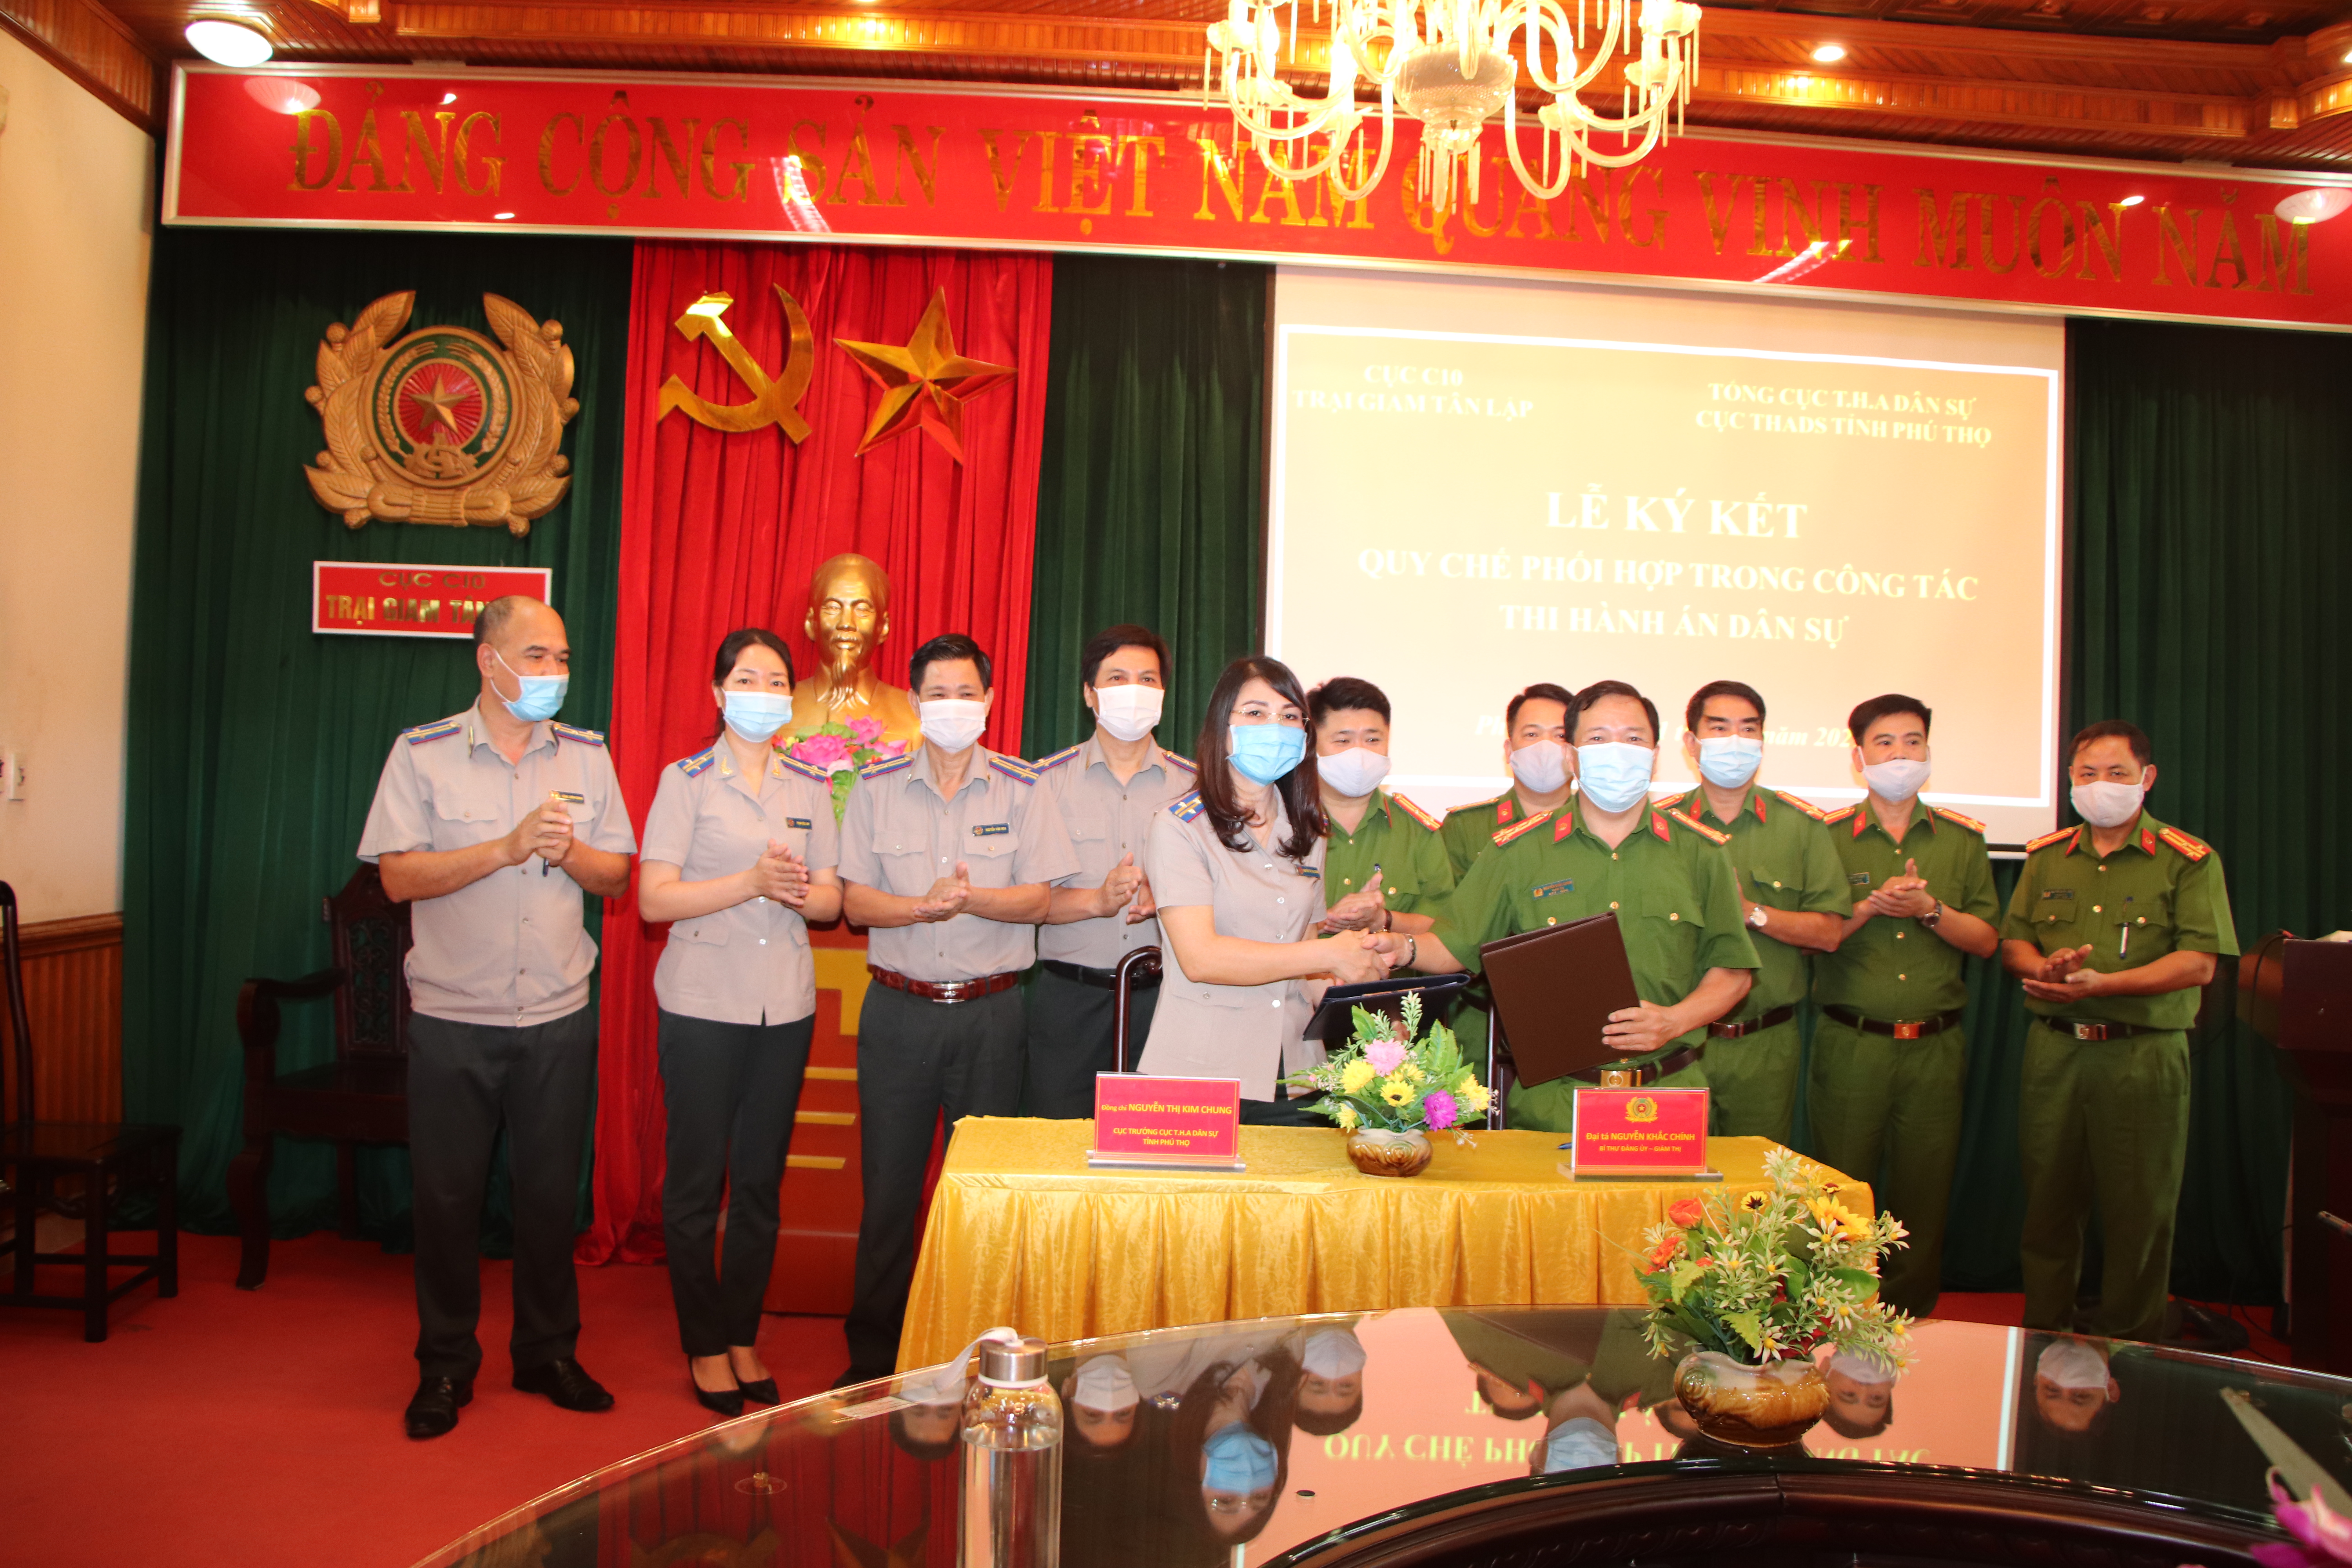 Cục Thi hành án dân sự tỉnh Phú Thọ và Trại giam Tân Lập tổ chức ký kết Quy chế phối hợp trong công tác Thi hành án dân sự